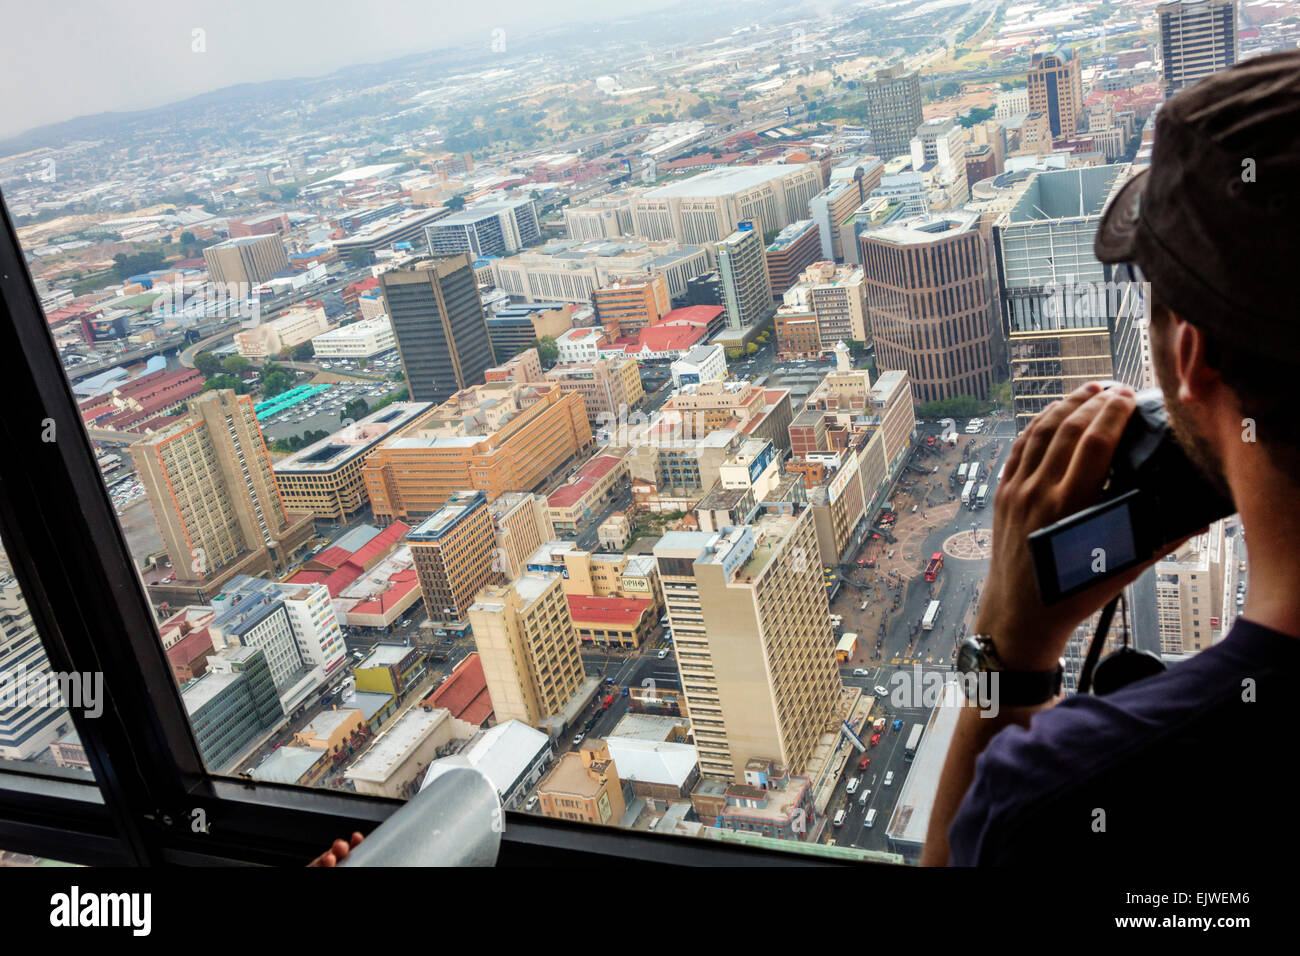 Johannesburg Afrique du Sud,Carlton Centre,centre,Top of Africa,observatoire pont,vue de,homme hommes,recherche,bâtiments,ville,SAfri150306128 Banque D'Images